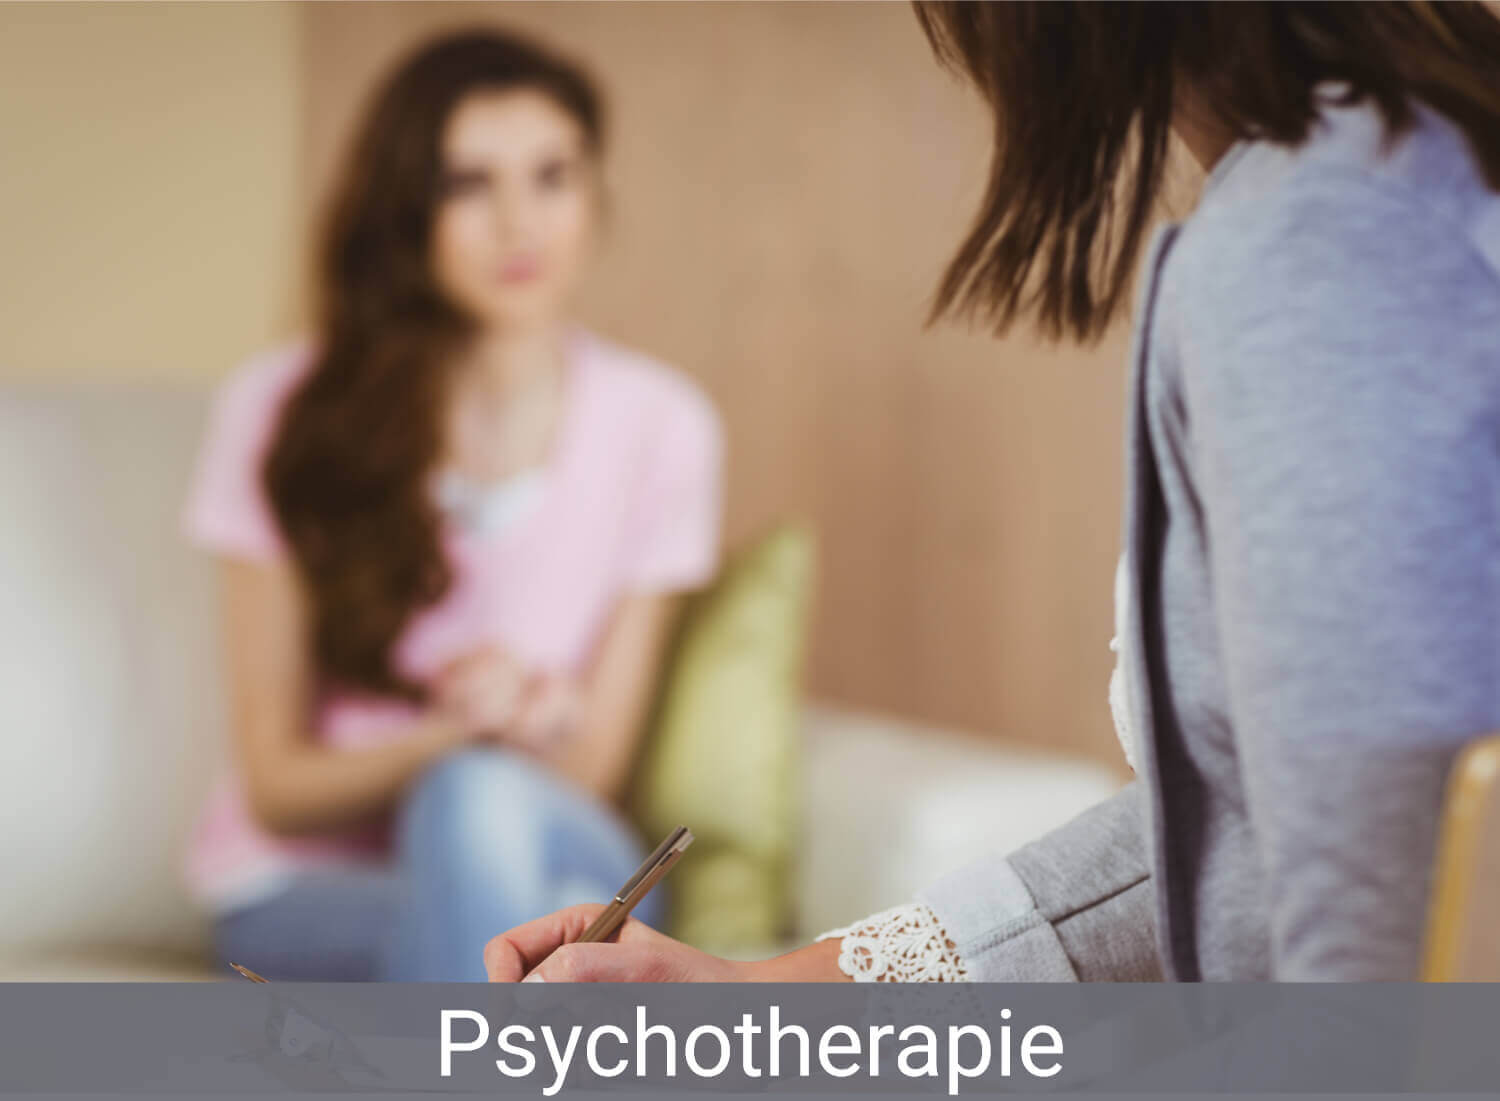 Psychotherapeutische-Praxisgemeinschaft-Silke-Kaba-Bianca-Topic-Haus-Issum-Gesundheitszentrum